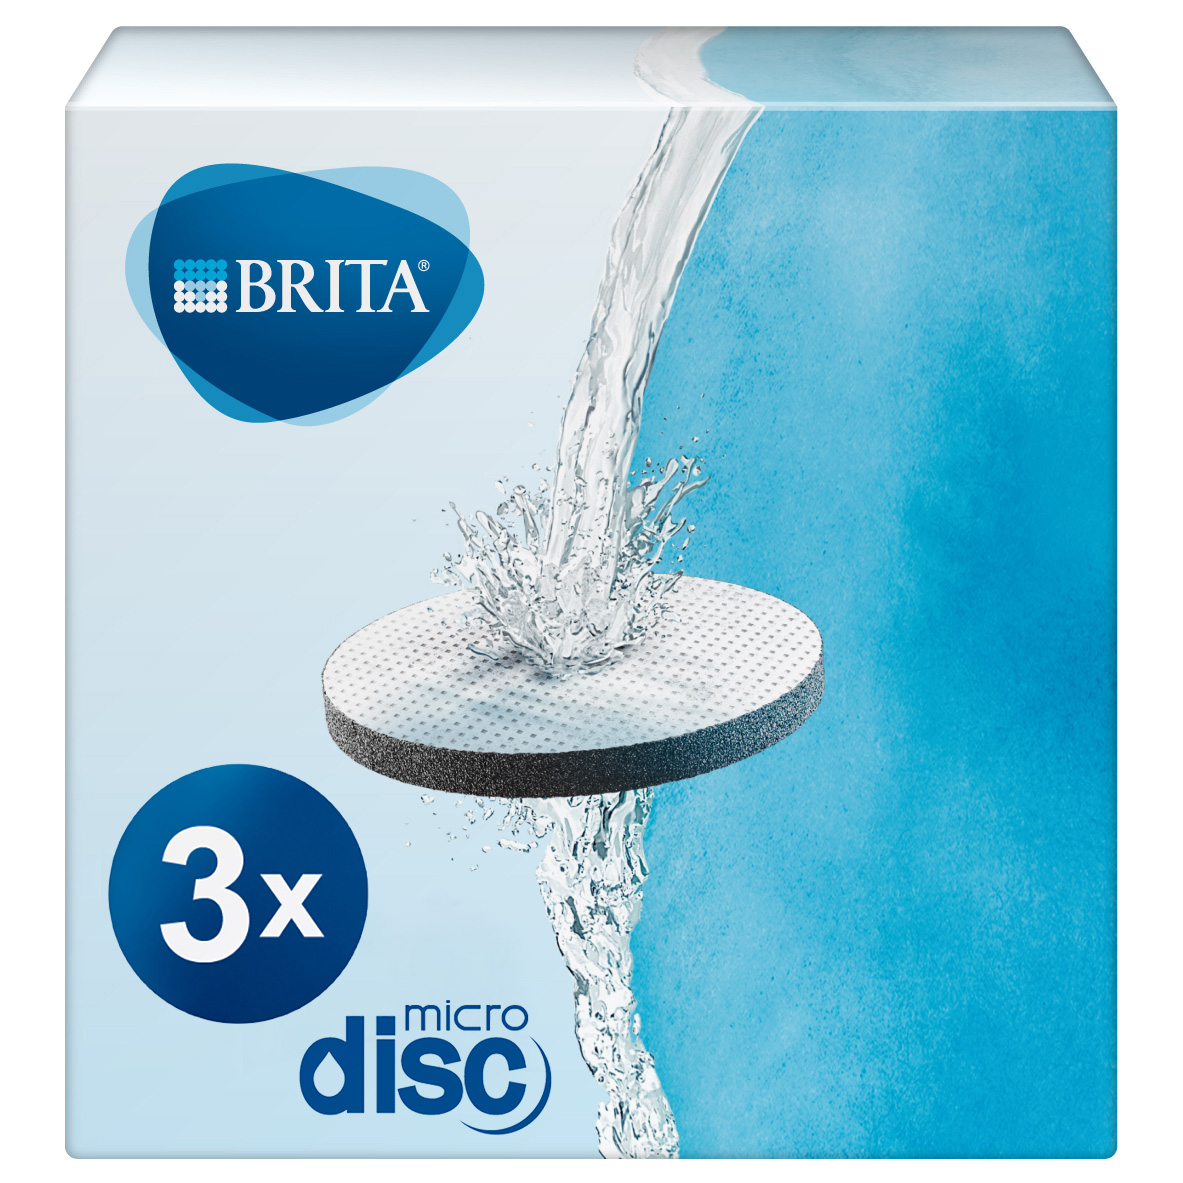 Brita - BRITA Pack de 3 Filtros MicroDisc con Tecnología Pure-Tast Compatible con Todas las Botellas Filtrantes BRITA Active y Vital, Filtra hasta 60 L, Reduce la Cal y el Cloro